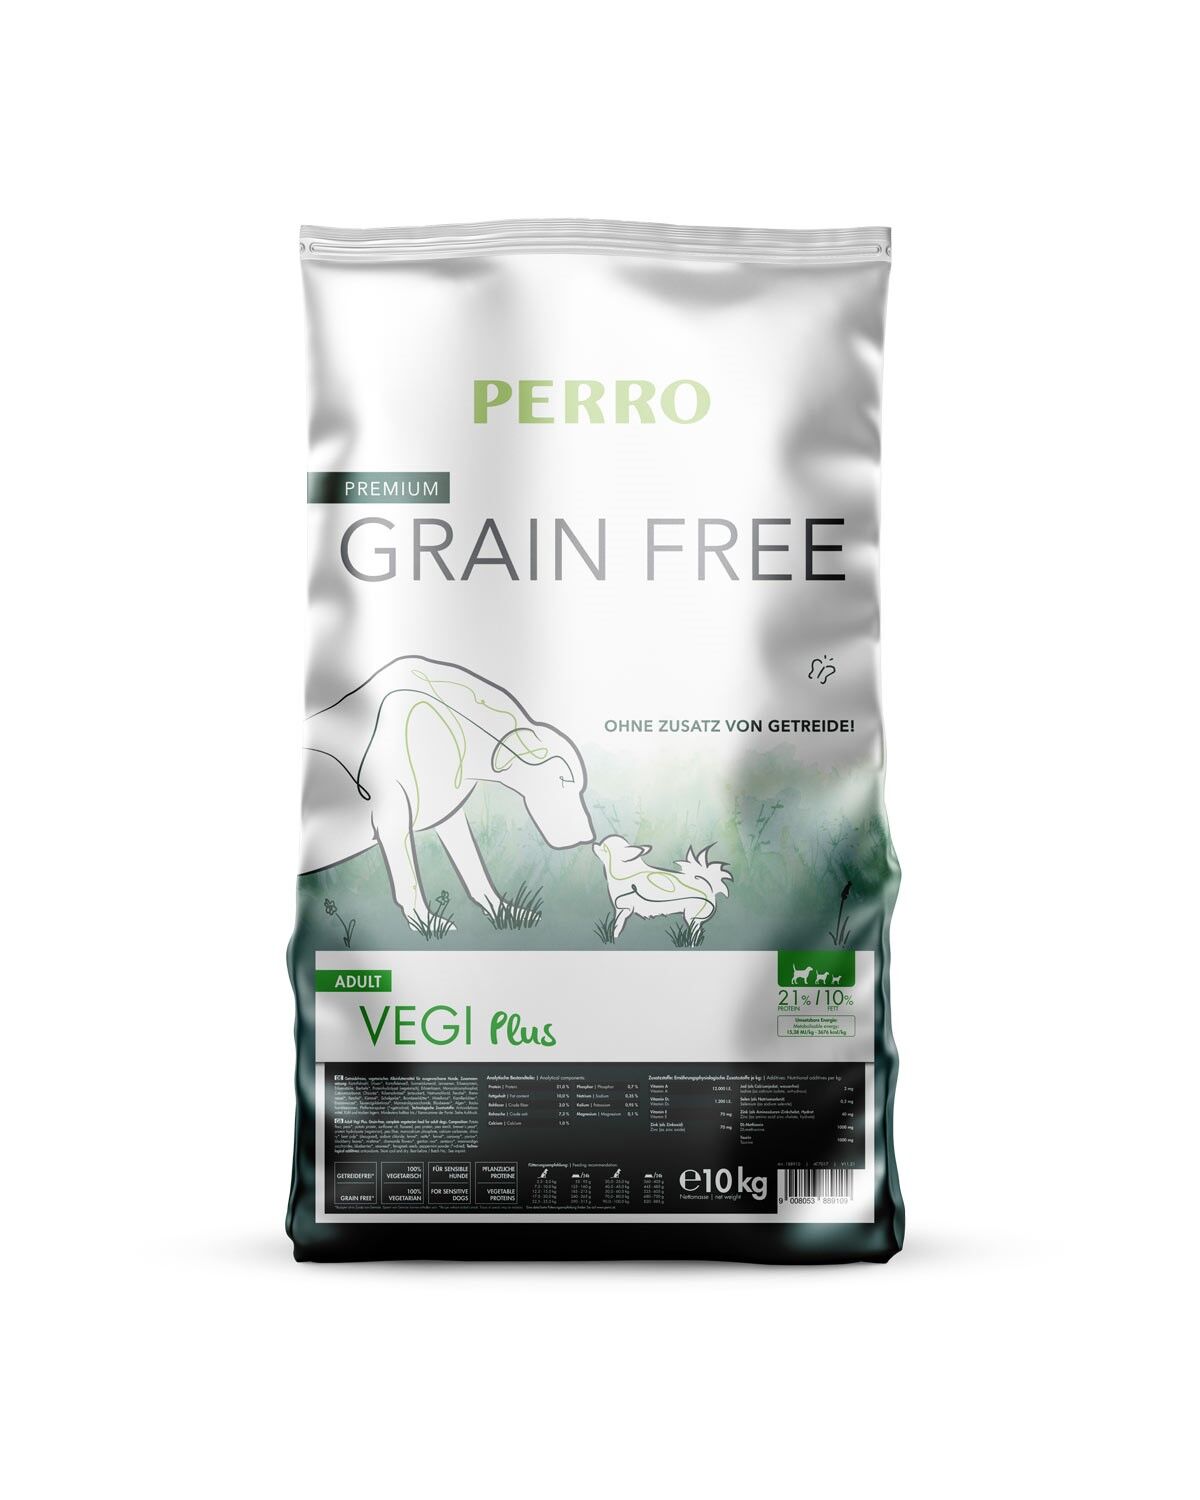 PERRO-Grain-Free-Vegi-Plus-hundefutter-trockenfutter-vegetarisch-fleischlos-ohne-Getreide-10-kg-188902